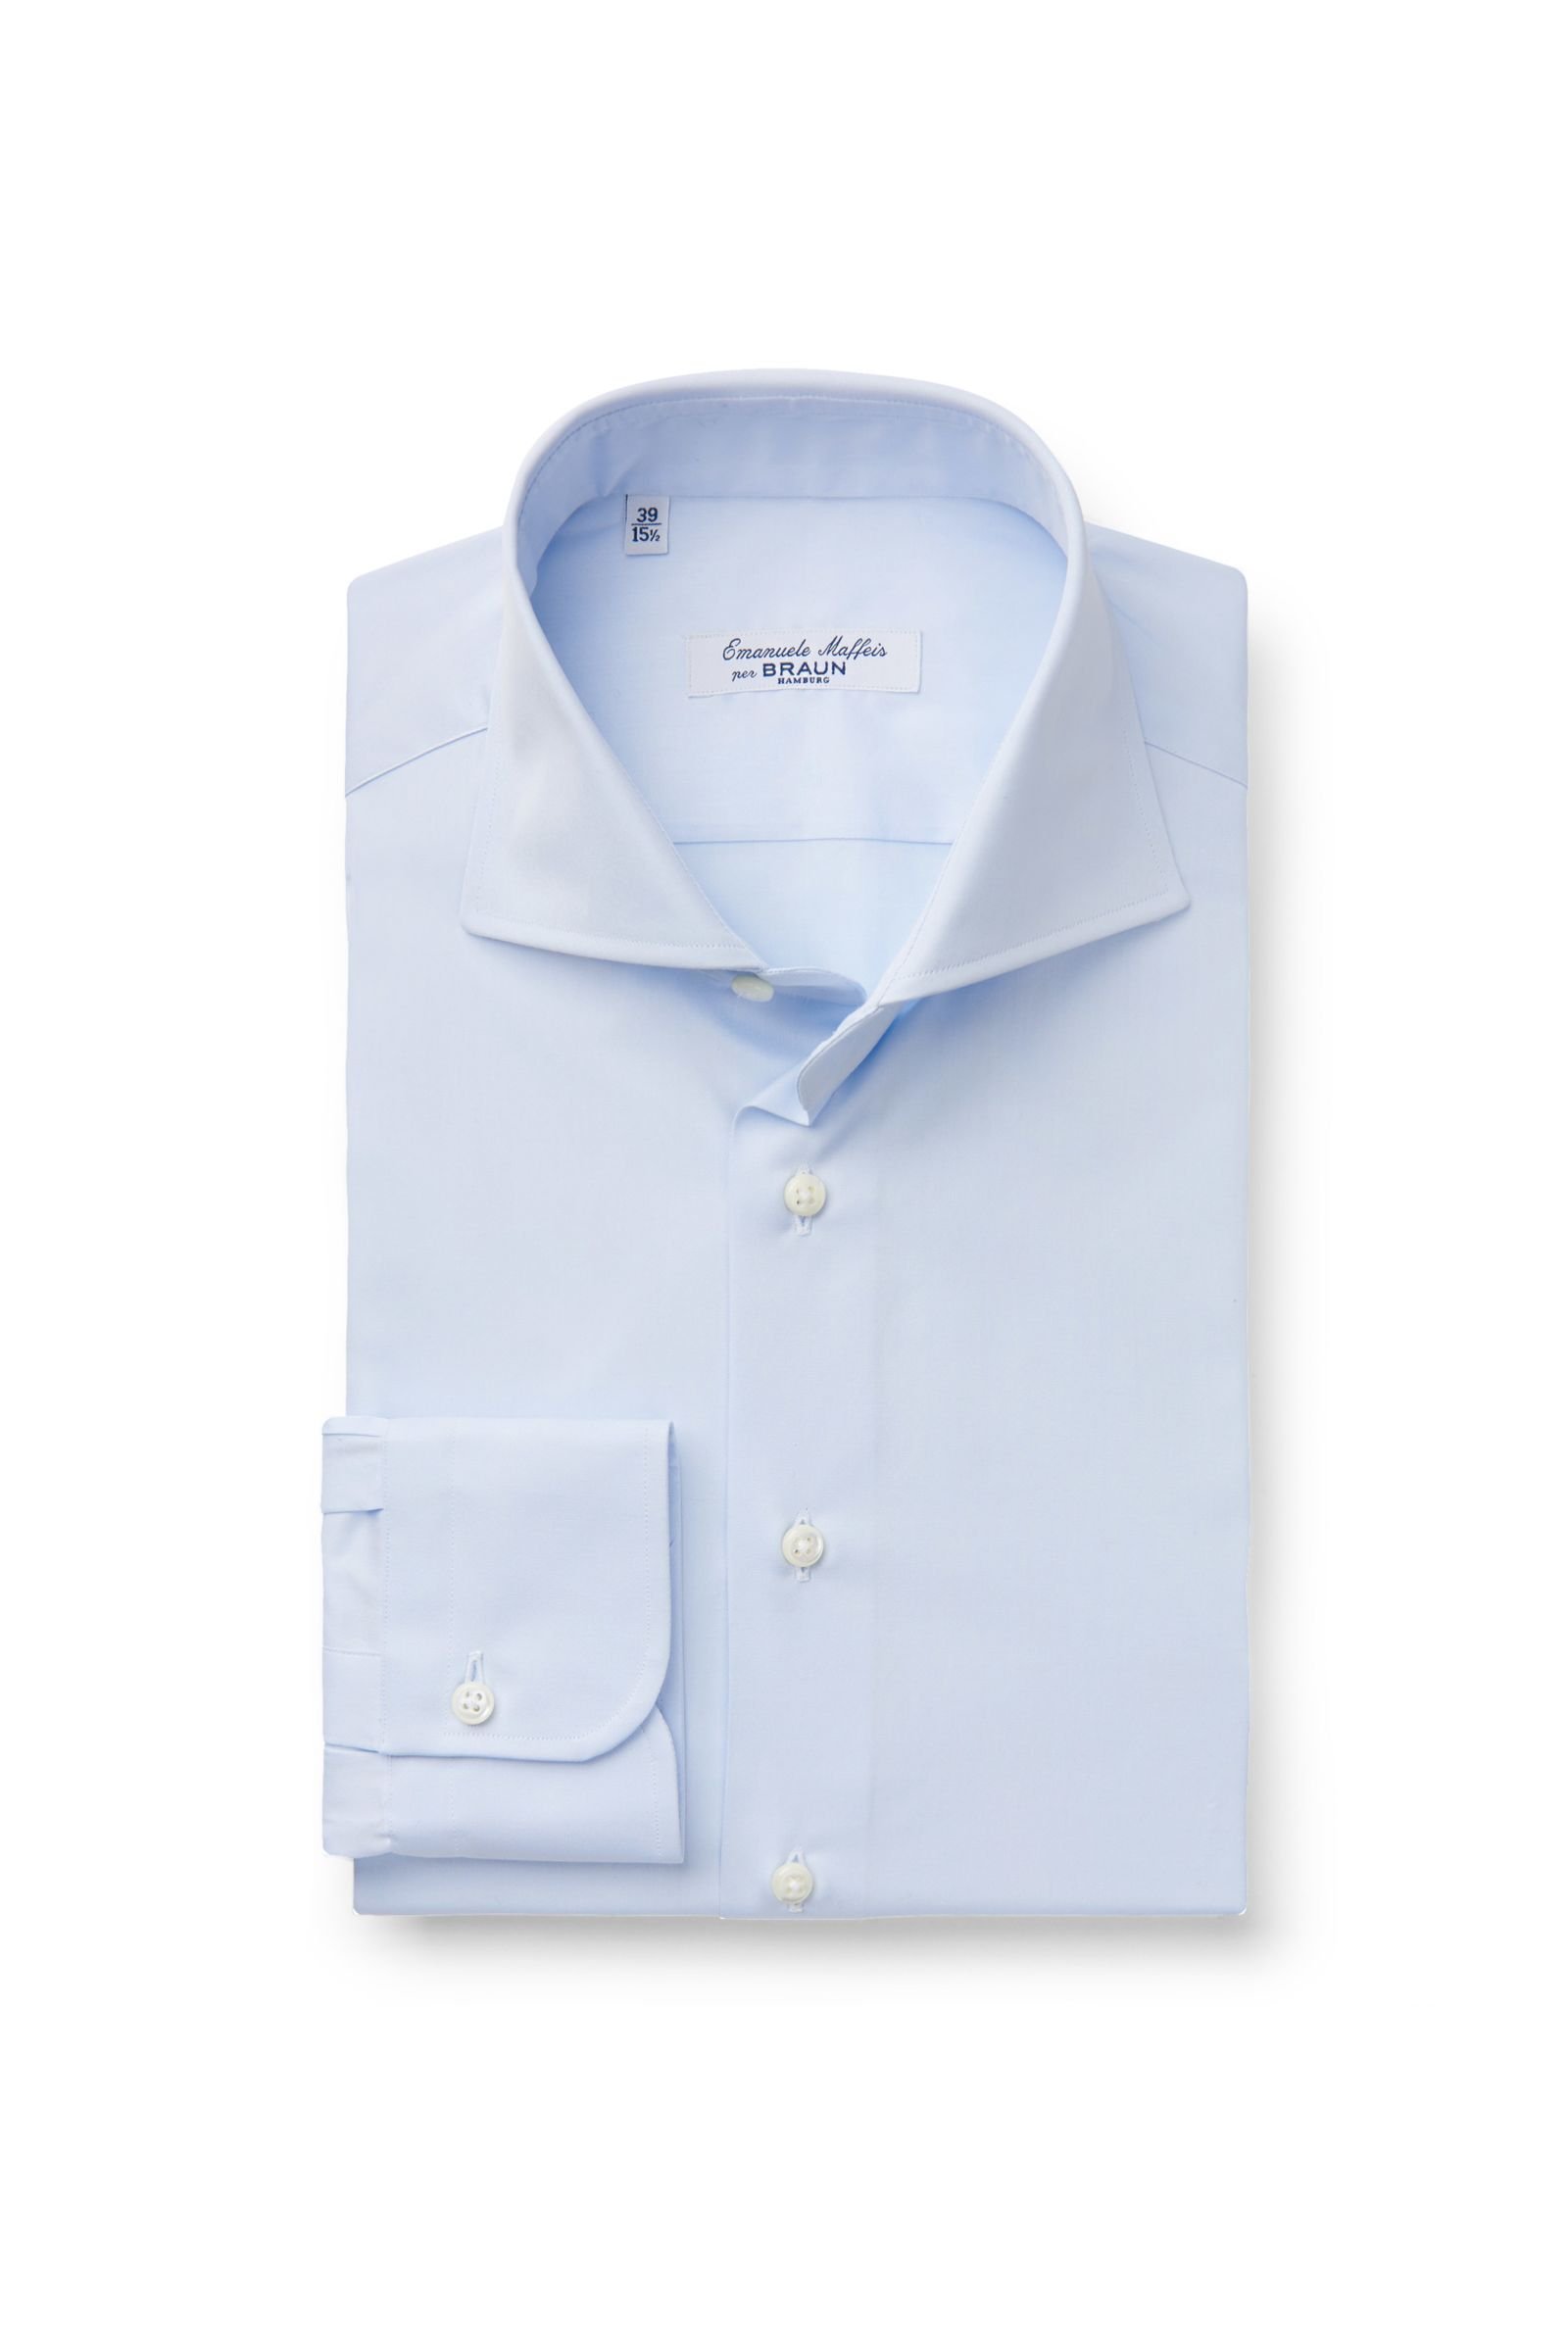 Business shirt 'Murano' shark collar light blue